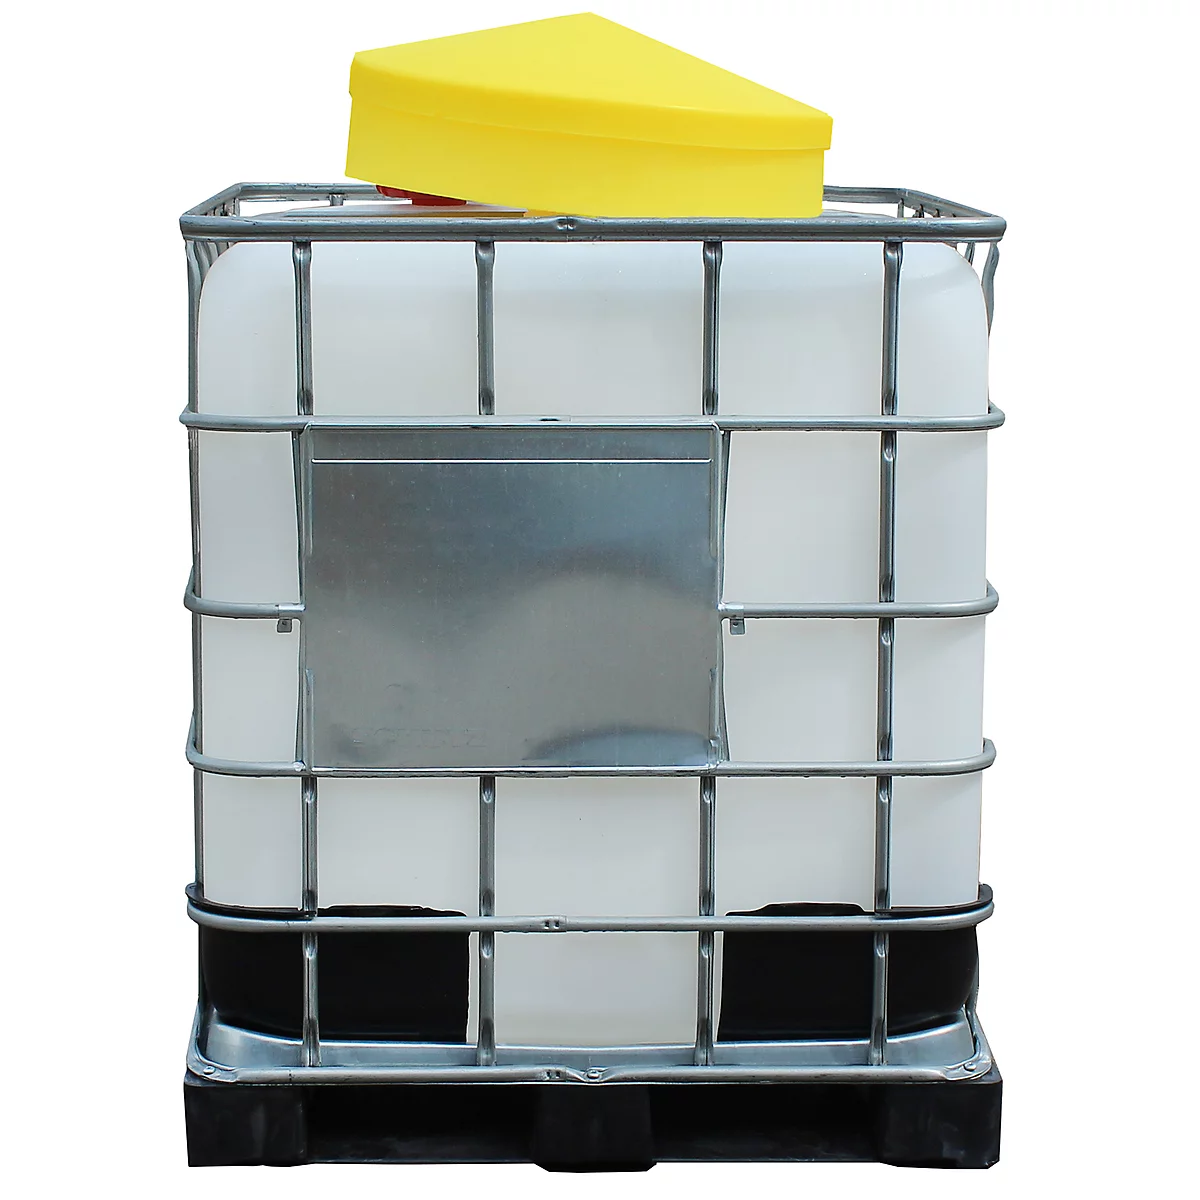 Polyetheen vattrechter, Ø 640 mm, 48 liter, met afneembaar deksel, voor IBC tanks van 100 liter, met zeef, geel